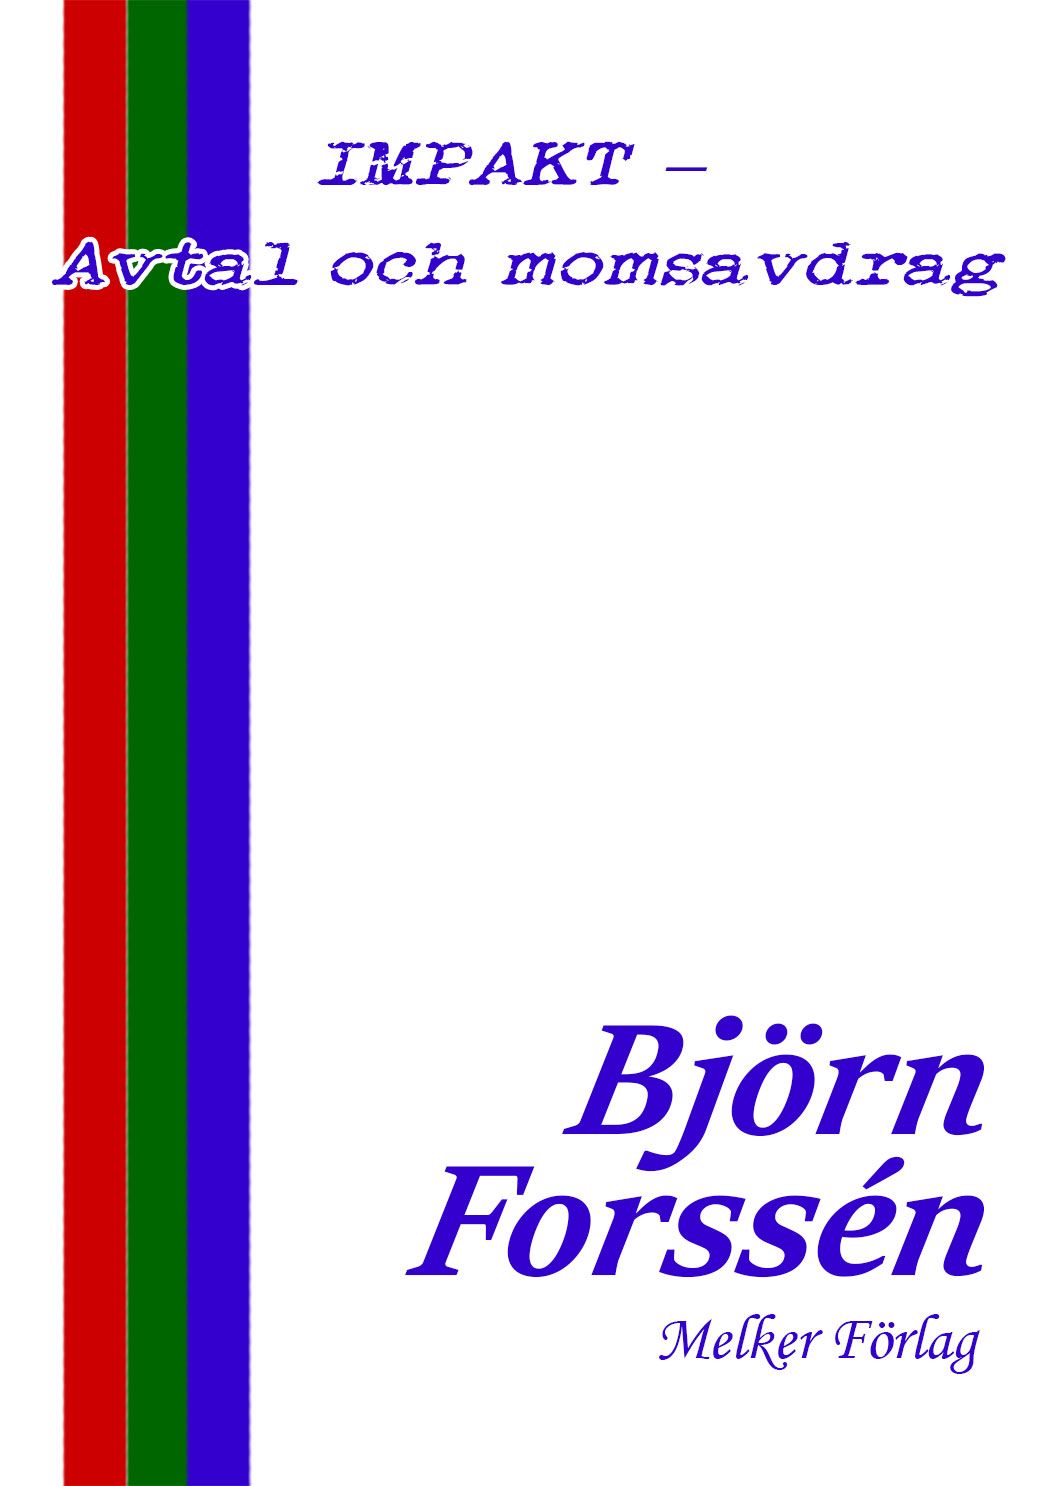 IMPAKT - Avtal och momsavdrag, eBook by Björn Forssén